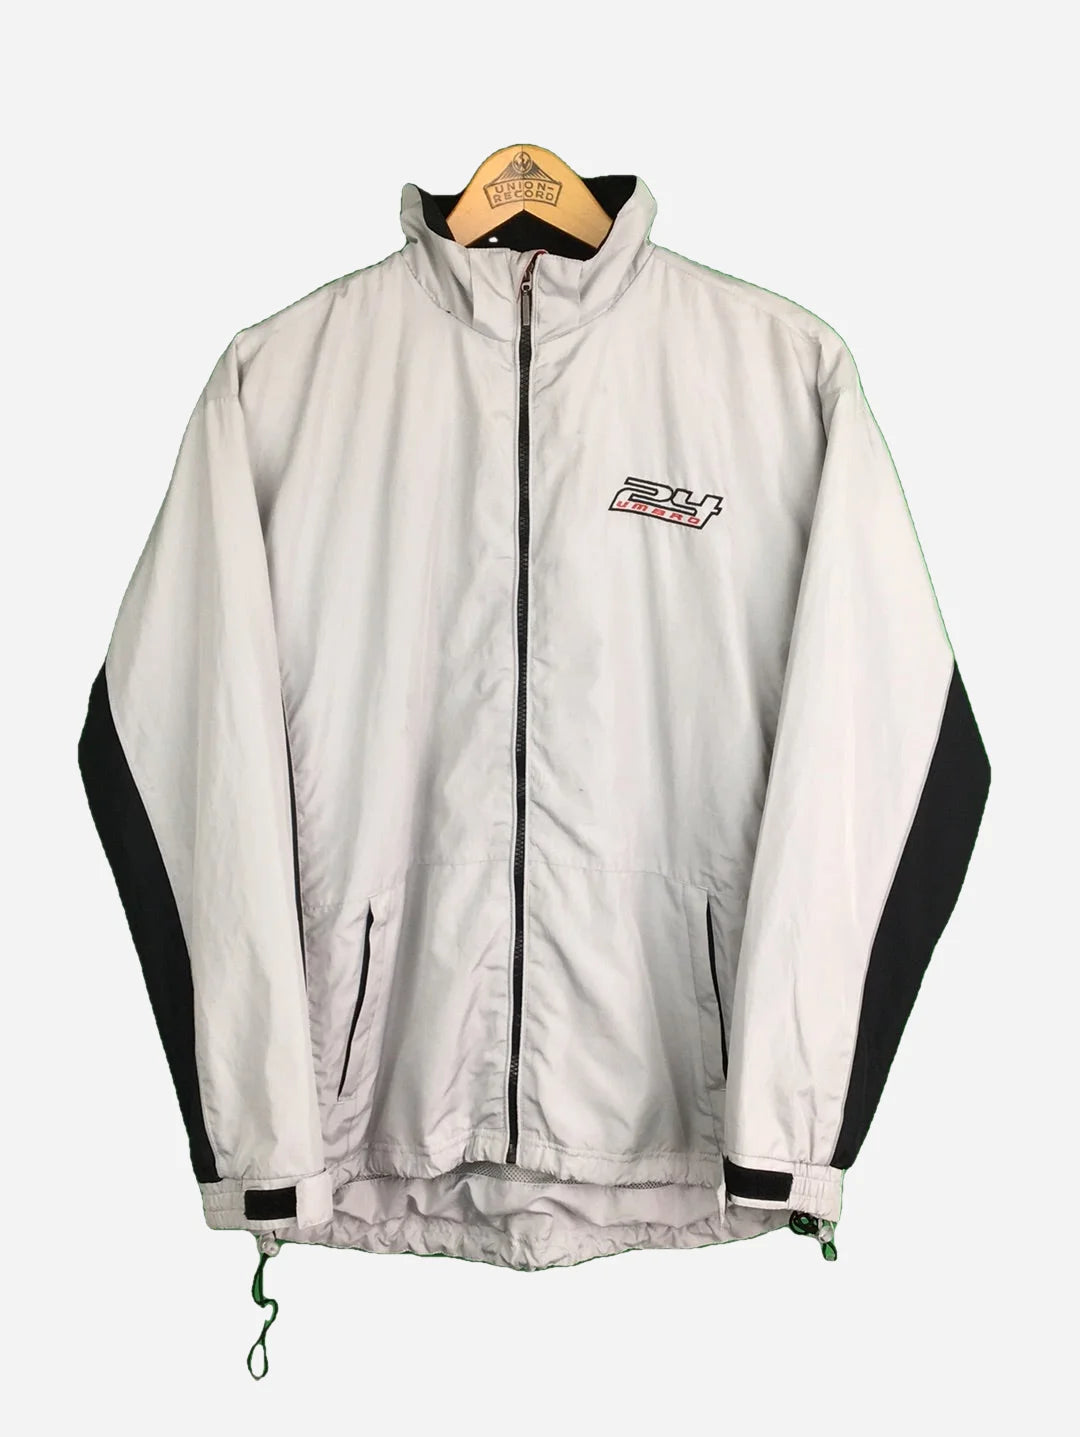 Umbro jacket (M)